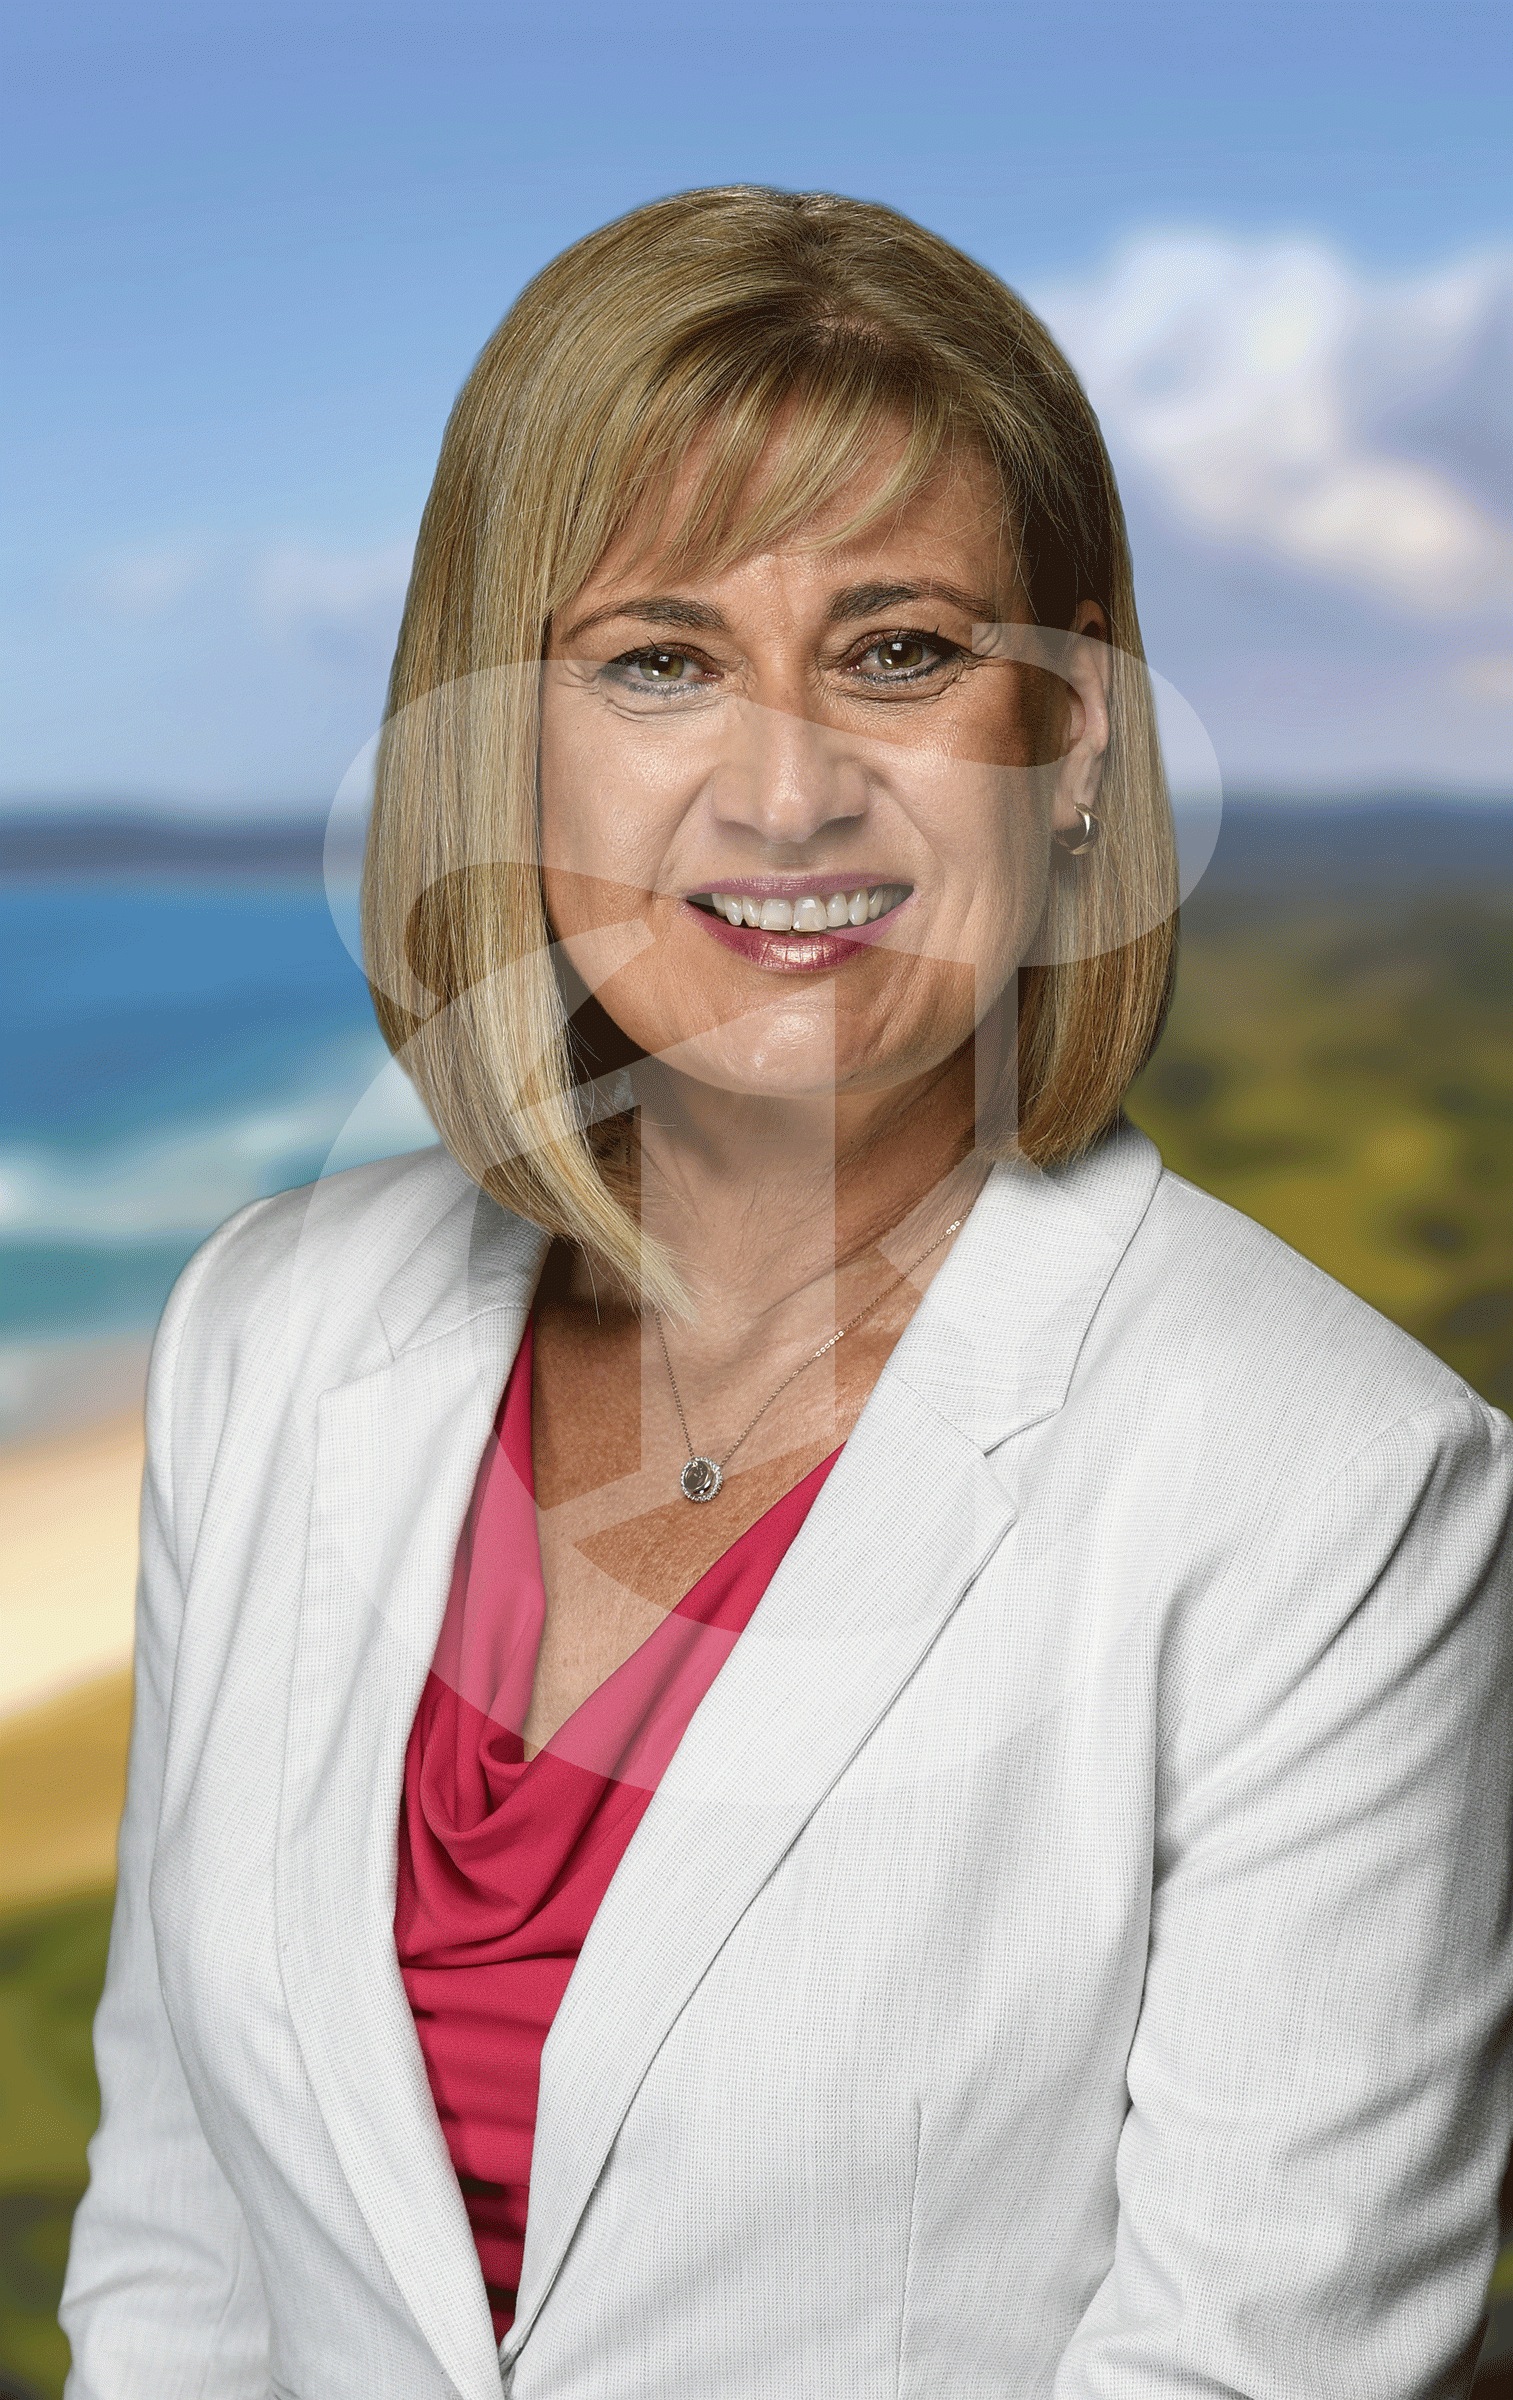 MP Justine Elliot